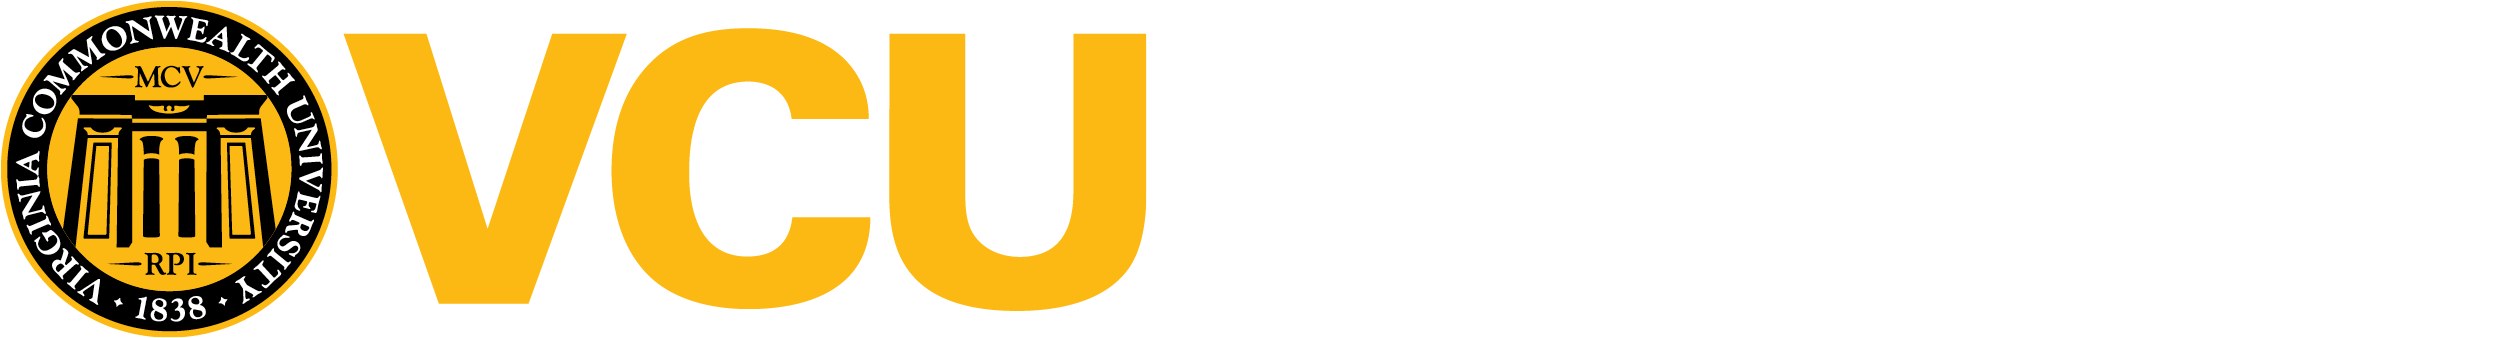 Summer conferences logo